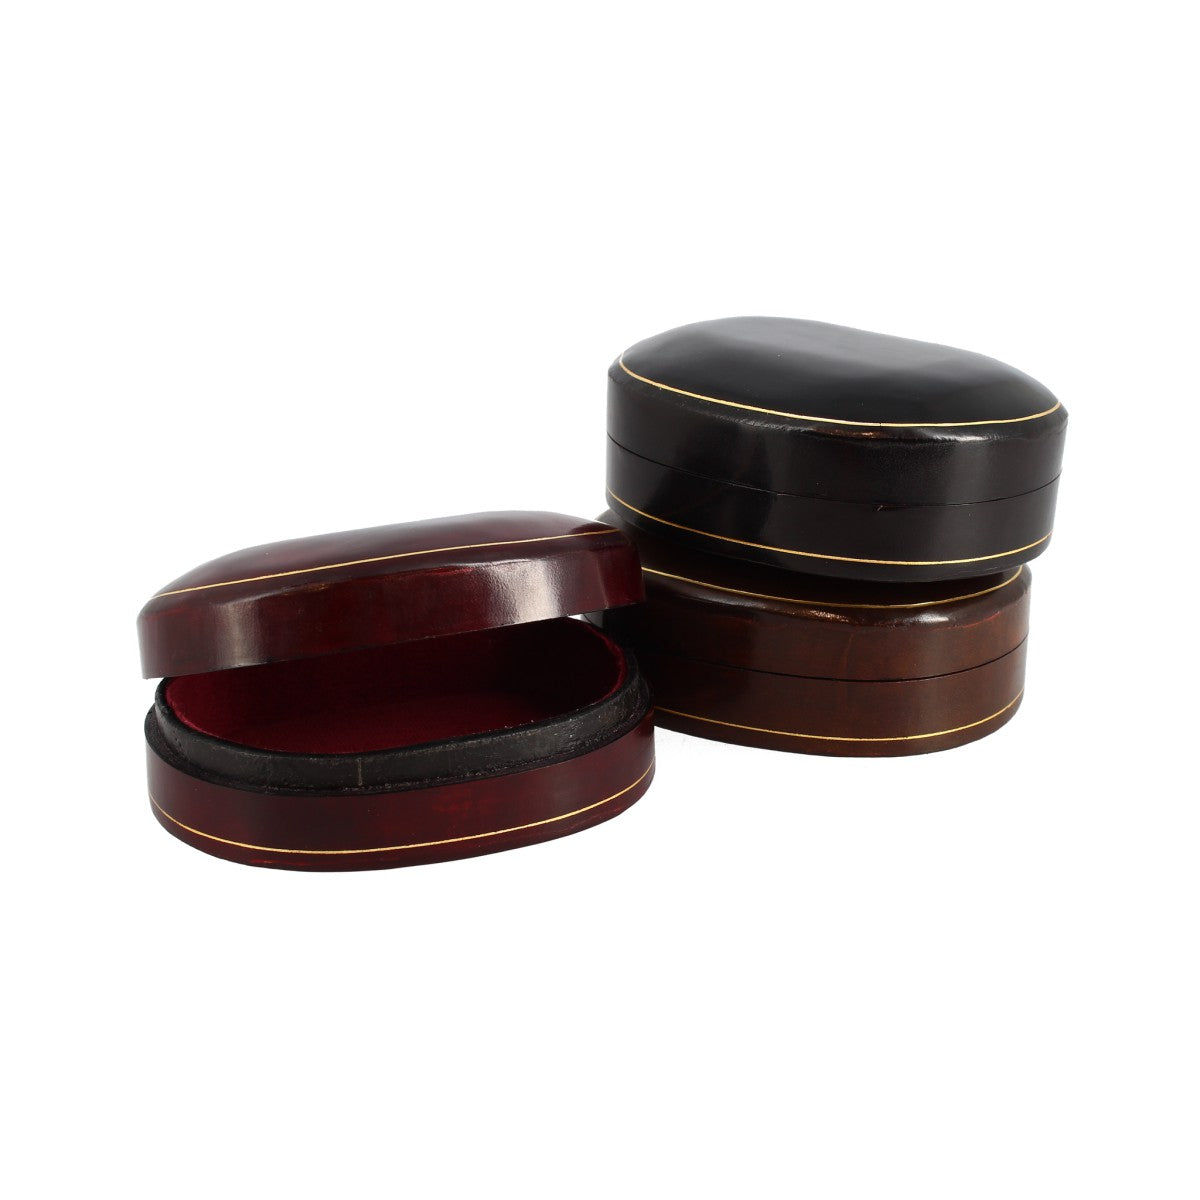 Portagioie ovale fatto in cuoio per gioielli disponibile in vari colori